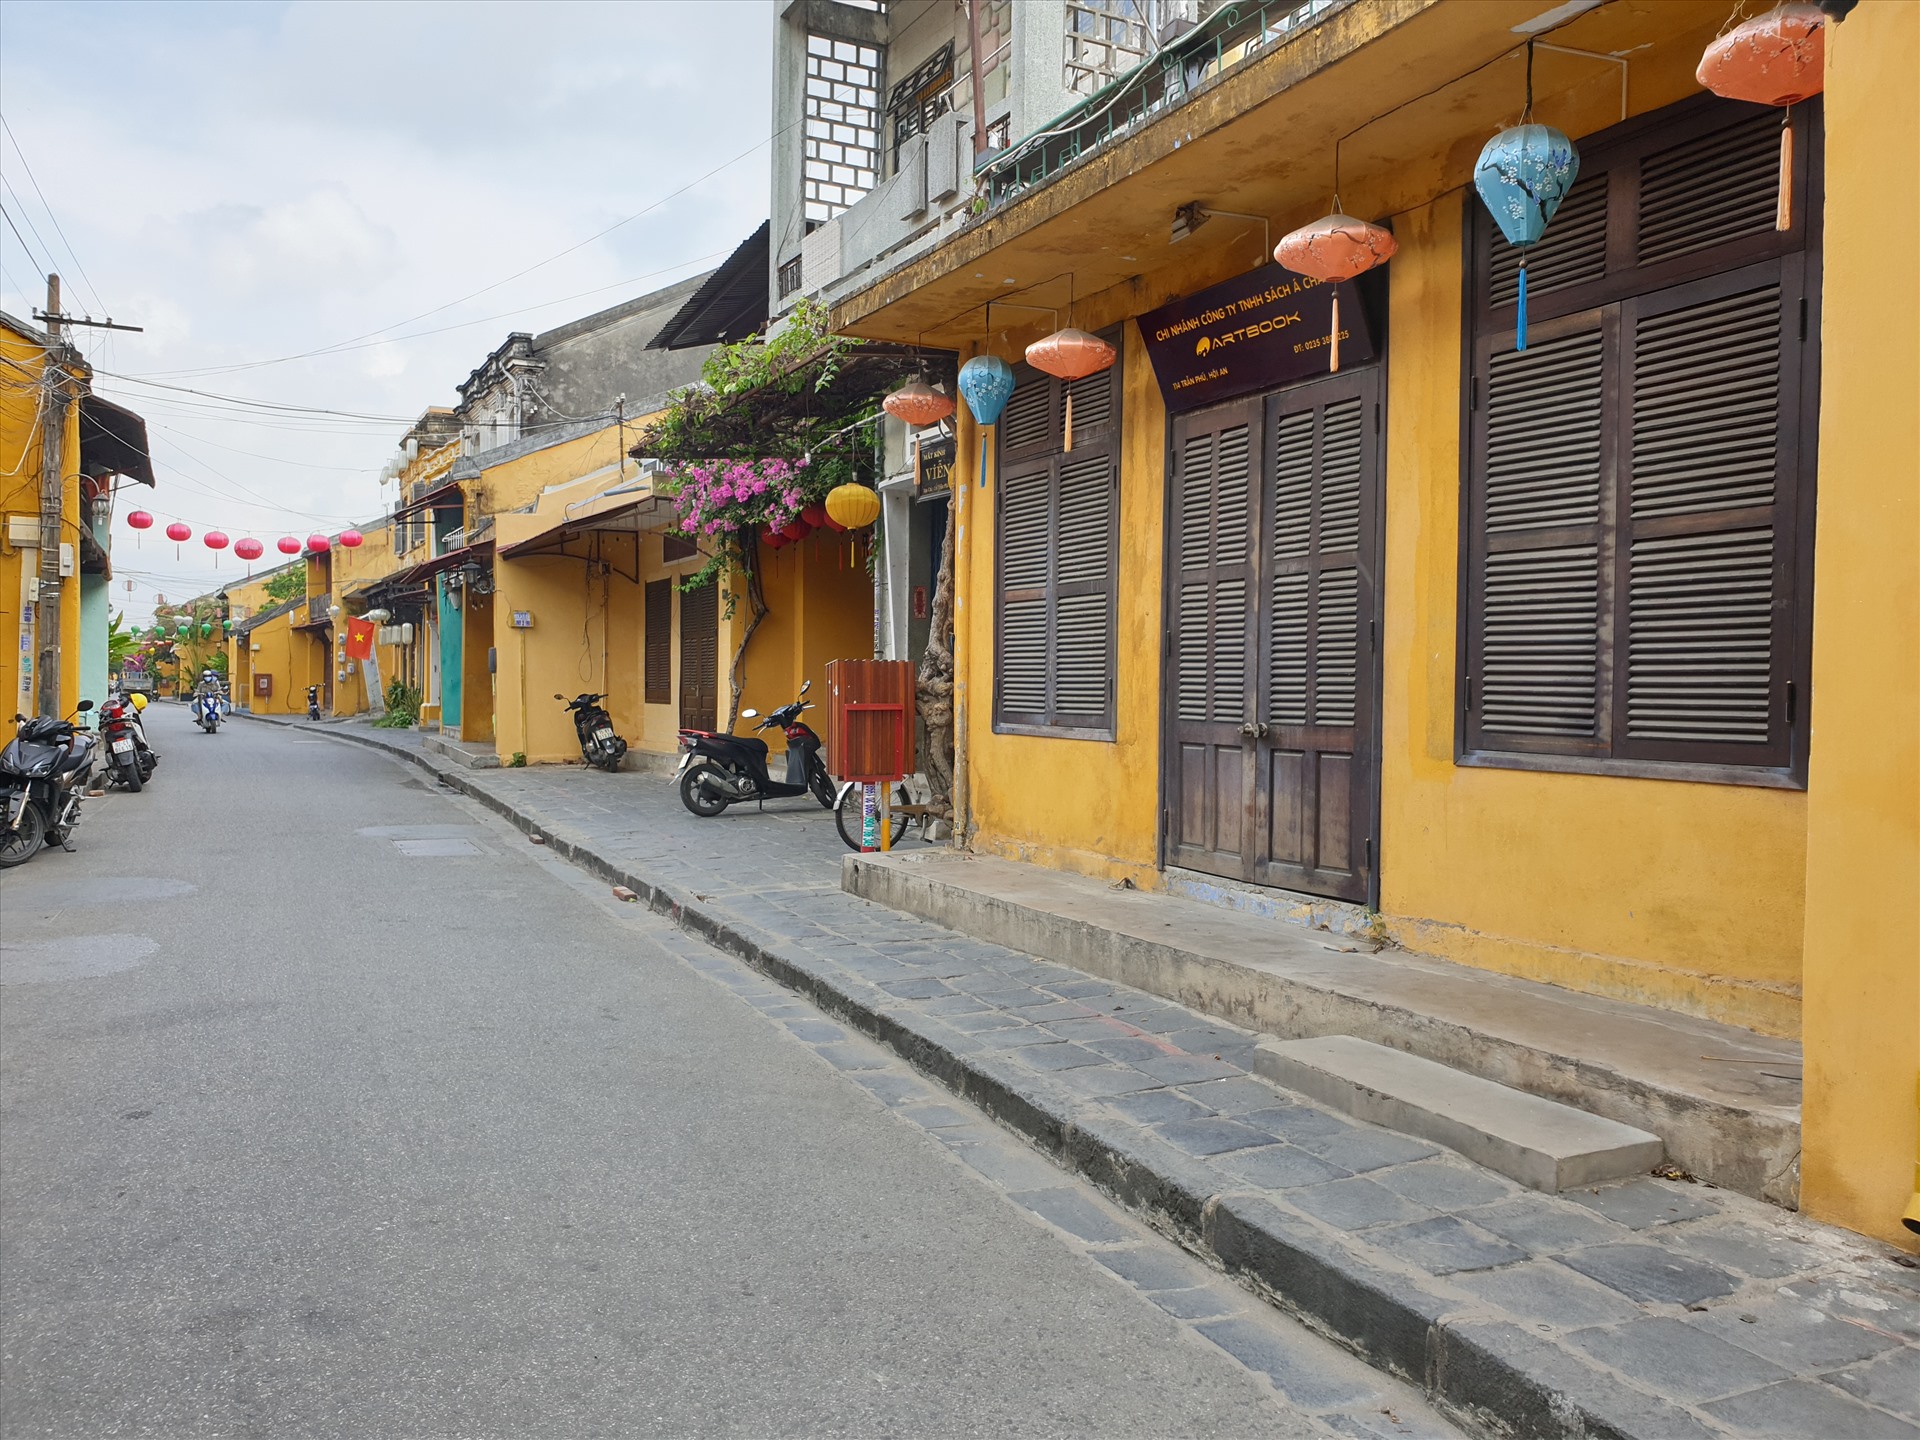 Hầu hết nhà hàng, quán cà phê trên các trục đường trong khu phố cổ như Nguyễn Thái Học, Trần Phú, Lê Lợi, Bạch Đằng...vẫn còn đóng cửa.